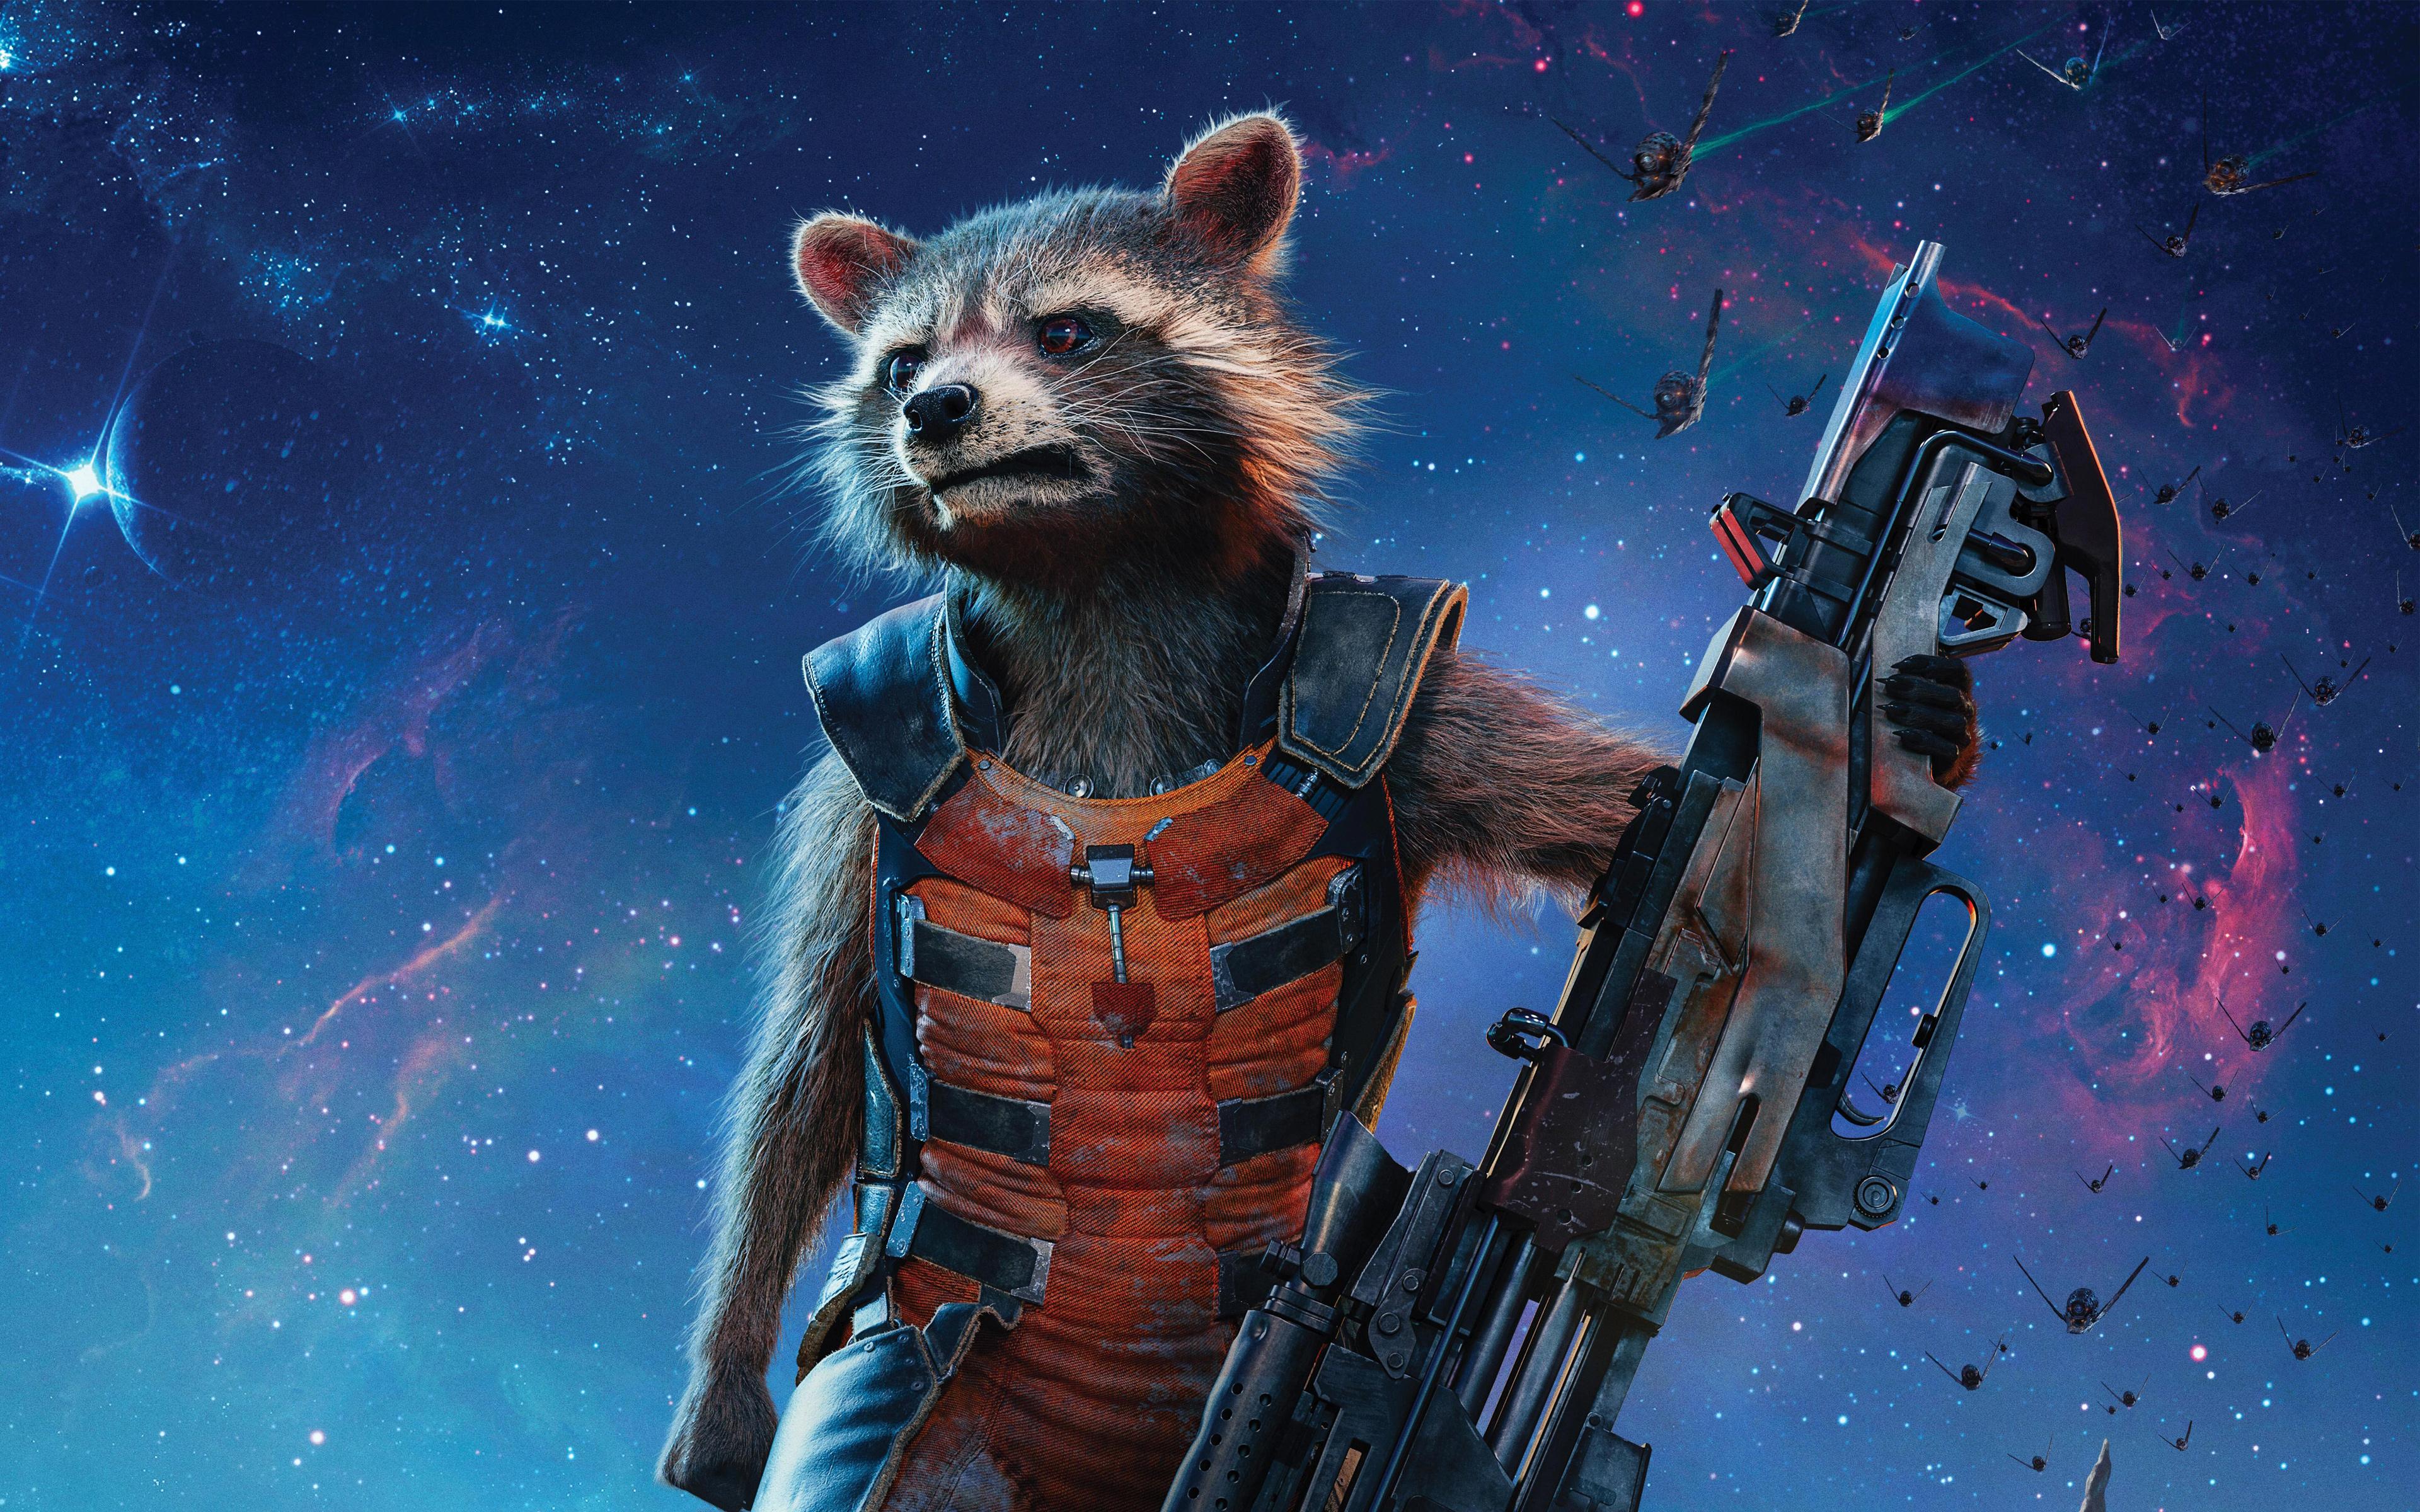 guardians of the galaxy 2022 rocket raccoon